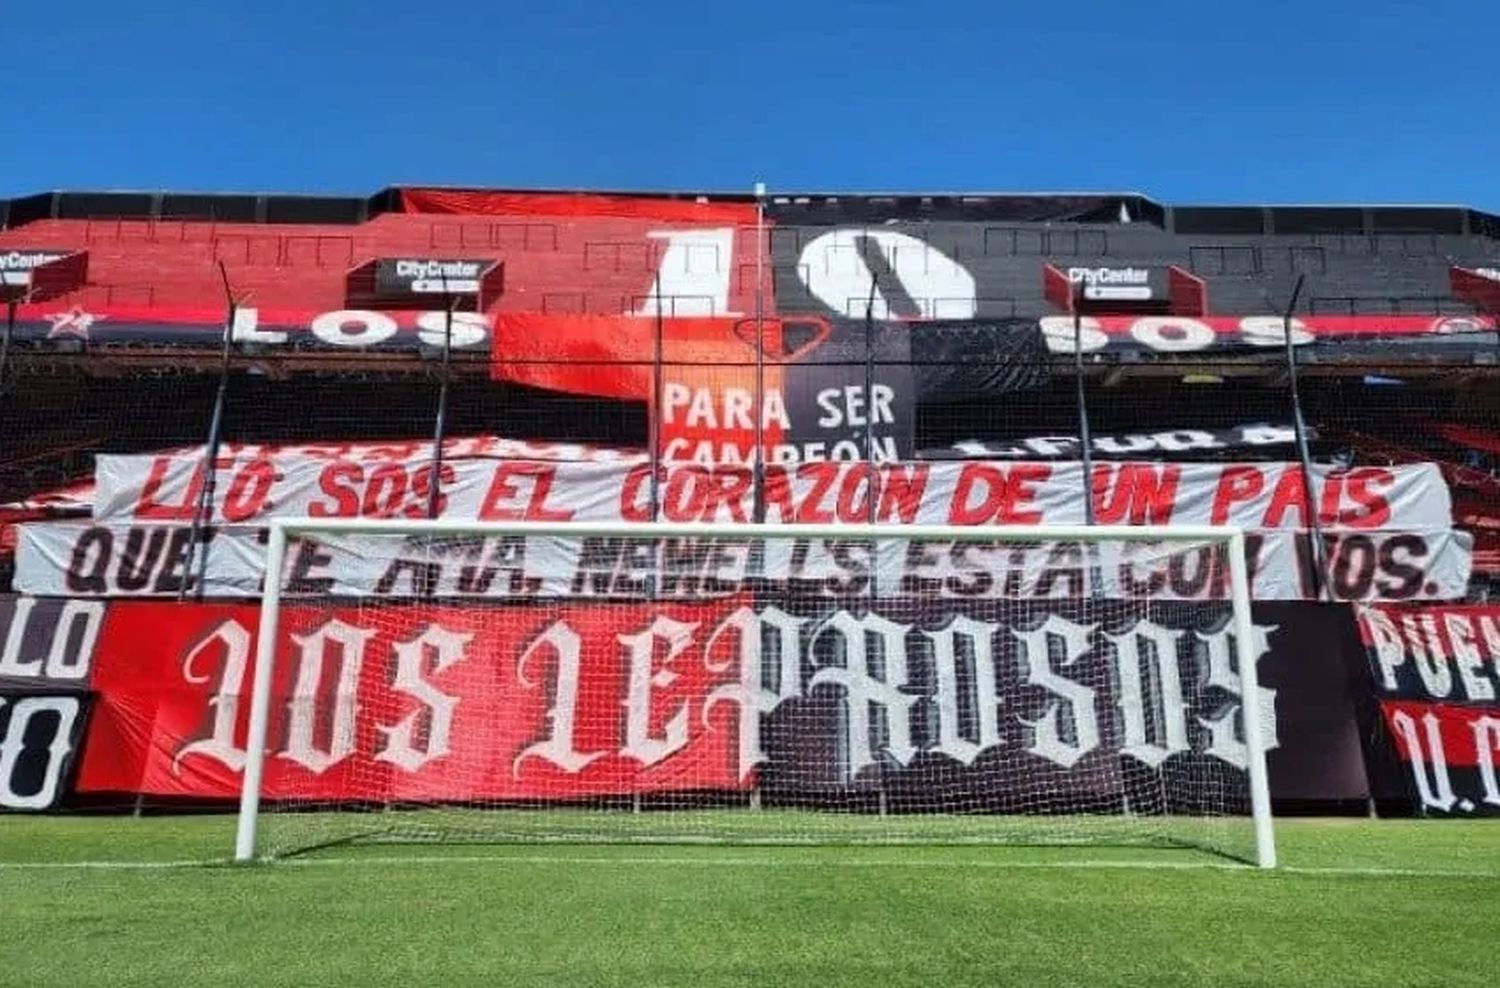 La hinchada de Newell’s hizo una bandera en apoyo a Messi luego del ataque narco